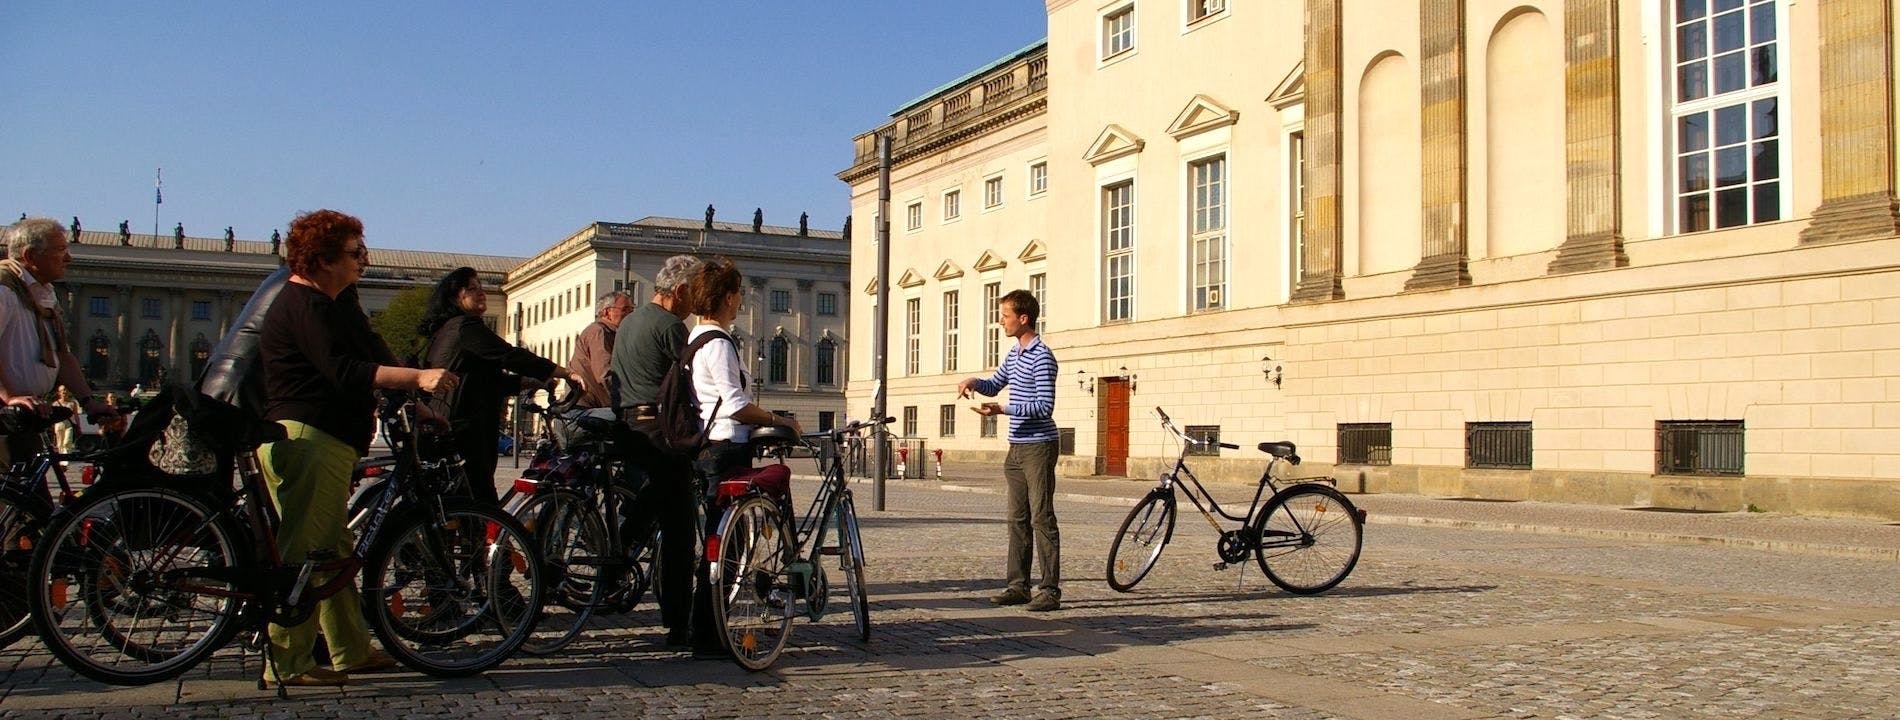 Il meglio del tour guidato in bici di Berlino